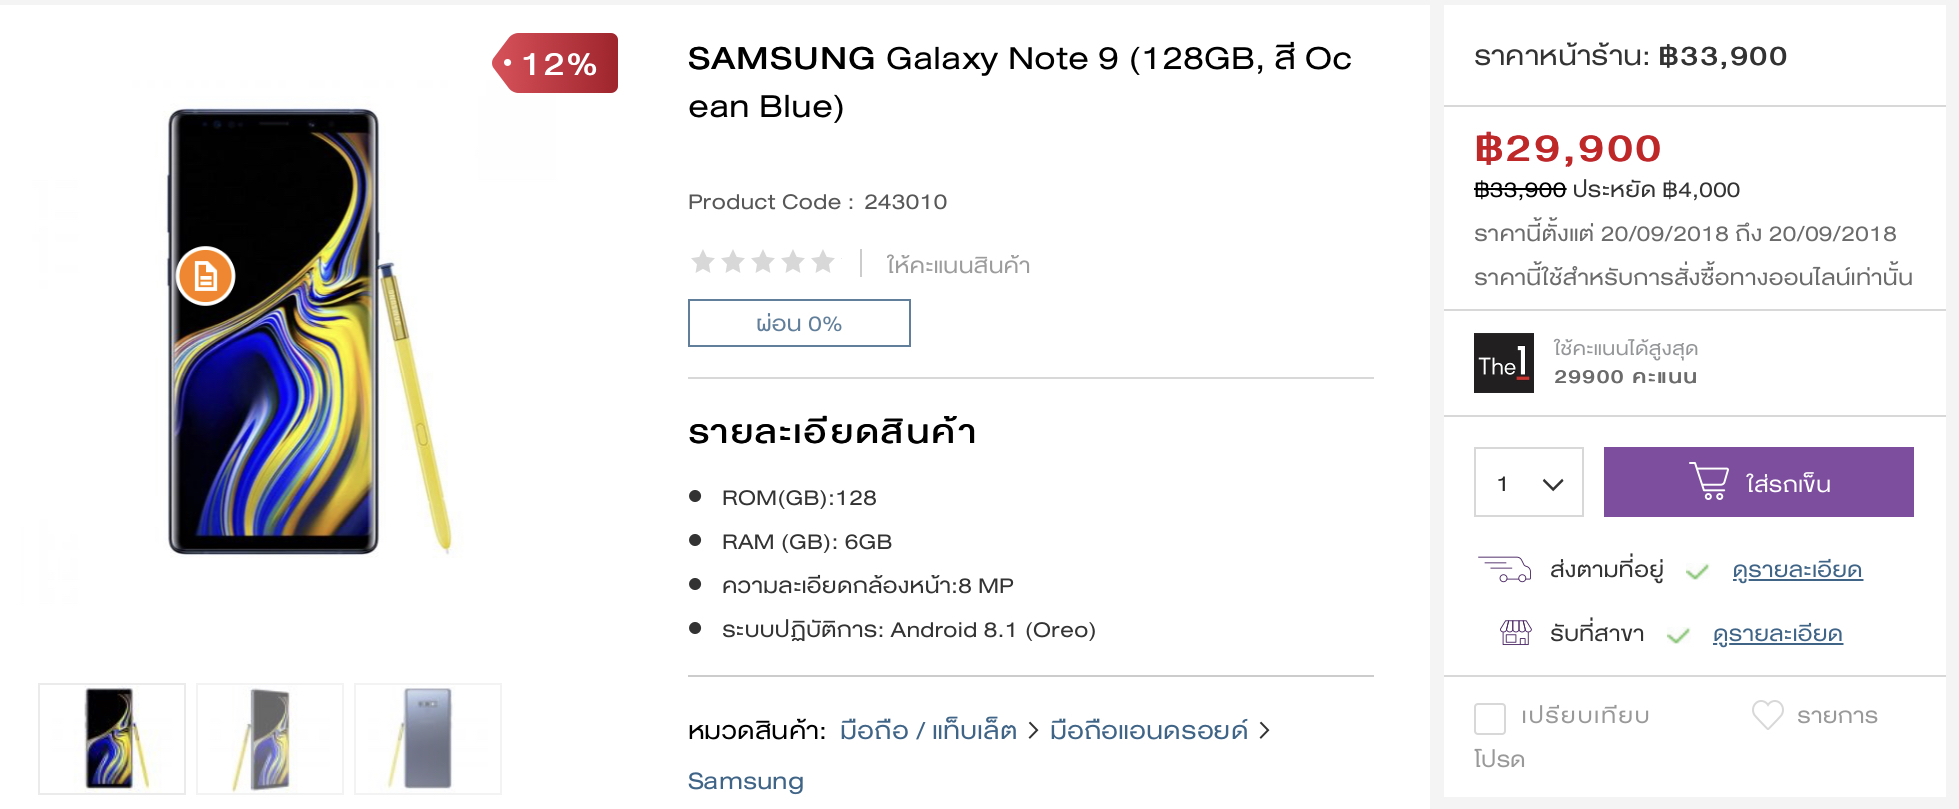 สวยพี่สวย Samsung Galaxy Note 9 เครื่องเปล่า ลดเลย 12% วันเดียวเท่านั้น!!